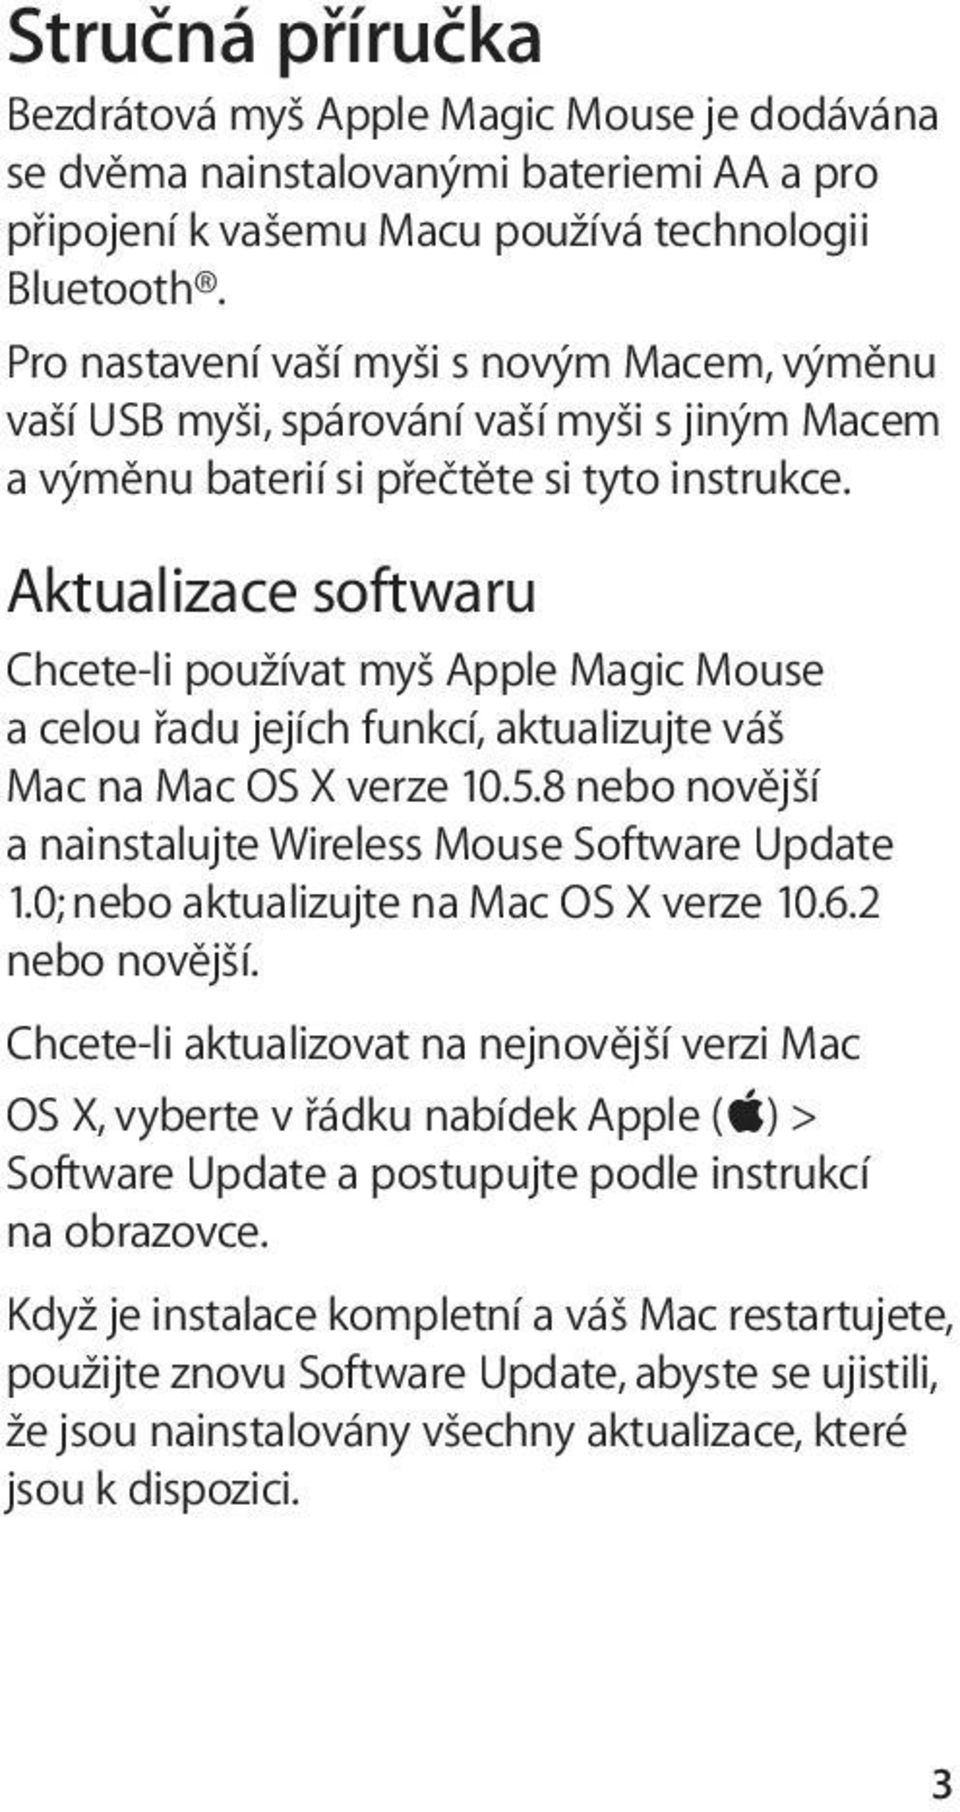 Aktualizace softwaru Chcete-li používat myš Apple Magic Mouse a celou řadu jejích funkcí, aktualizujte váš Mac na Mac OS X verze 10.5.8 nebo novější a nainstalujte Wireless Mouse Software Update 1.